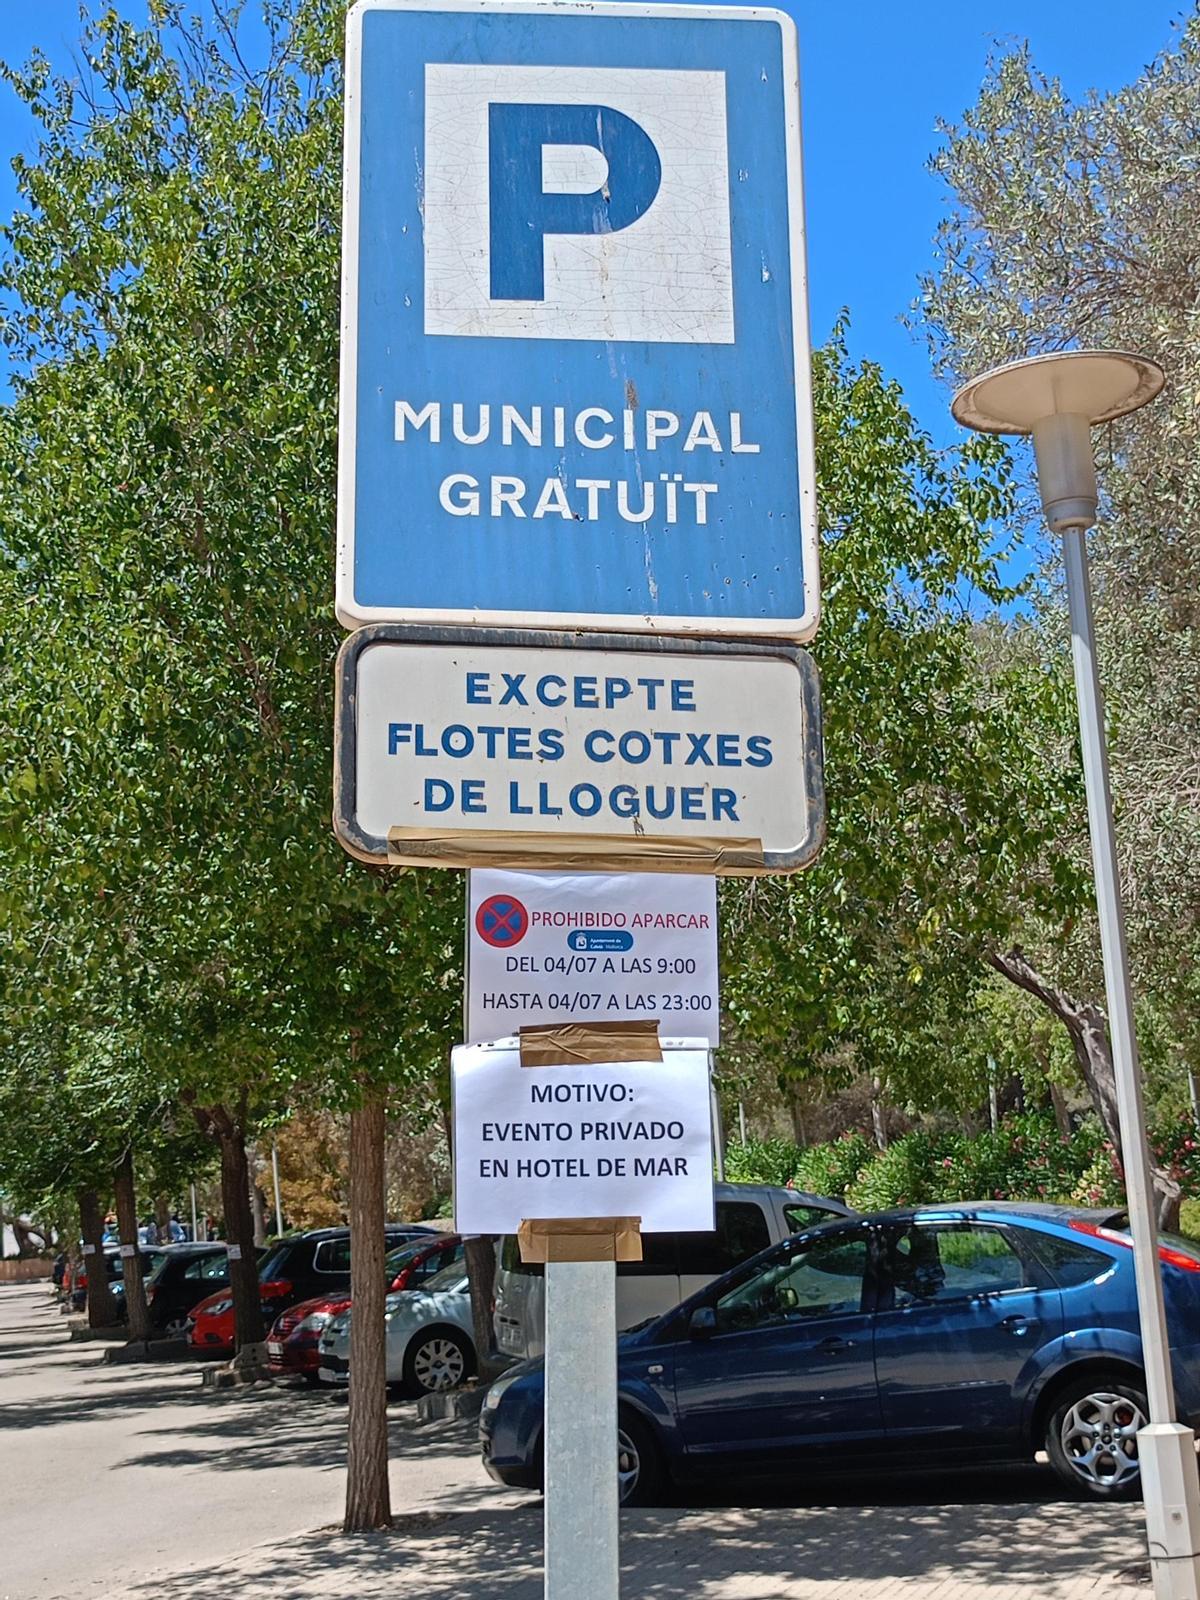 Una imagen del aparcamiento público que el Ayuntamiento ha reservado para una fiesta privada